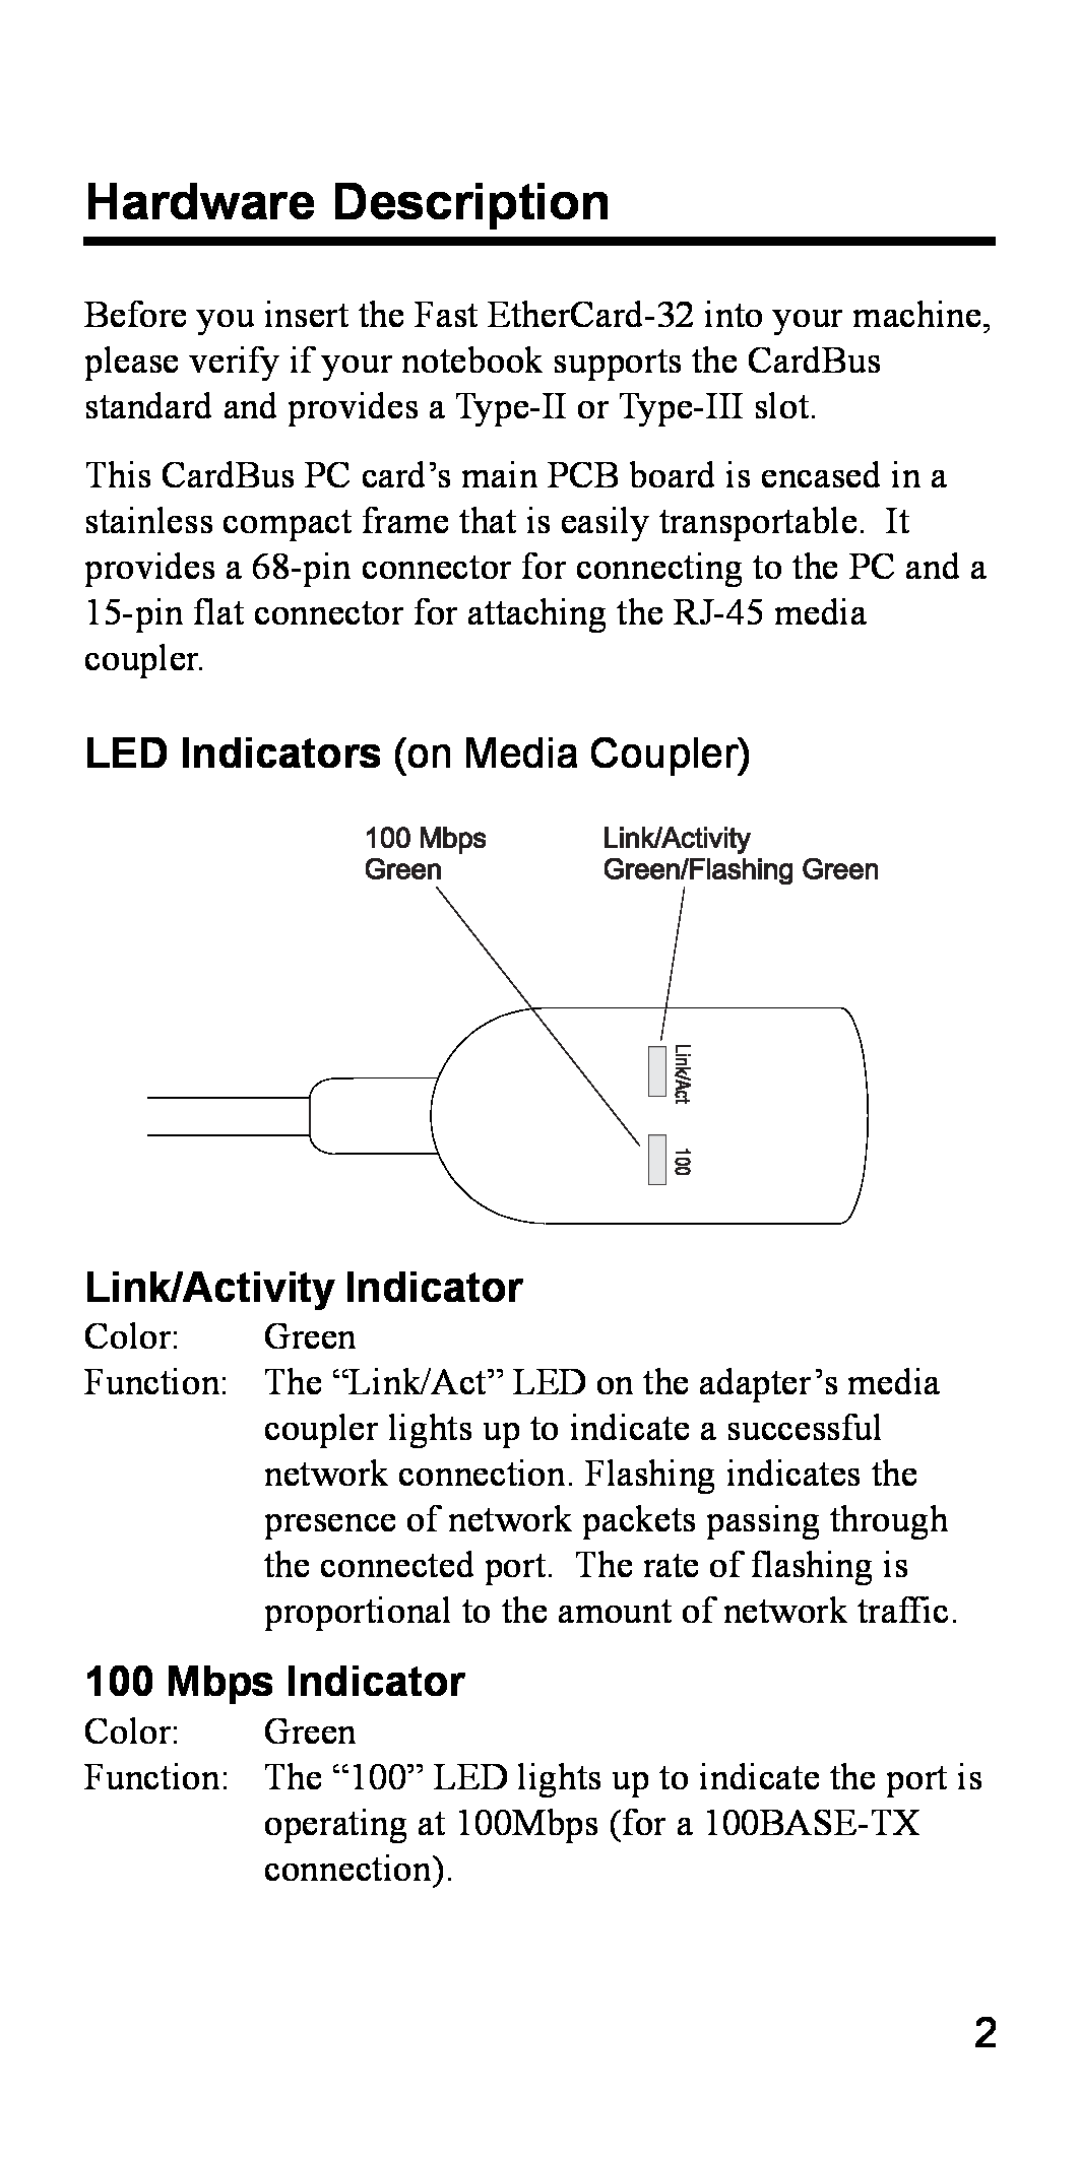 Accton Technology 32 Hardware Description, Link/Activity Indicator, Mbps Indicator, LED Indicators on Media Coupler 